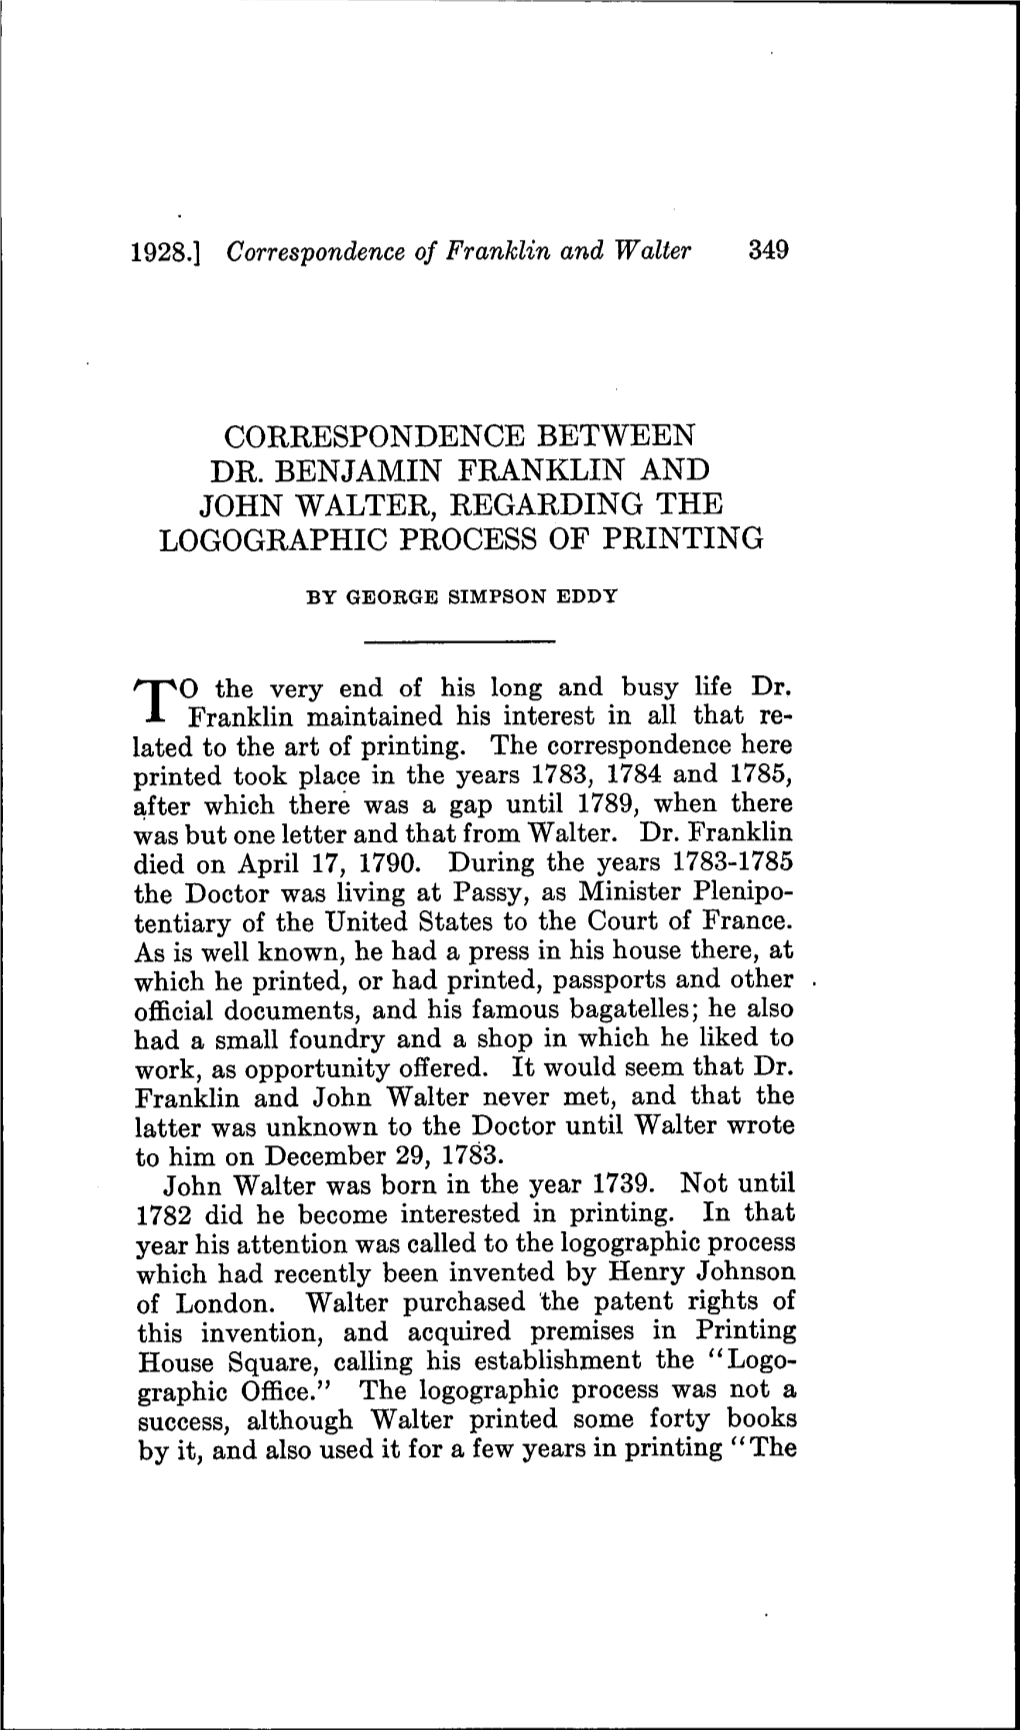 Correspondence Between Dr. Benjamin Franklin and John Walter, Regarding the Logographic Process of Printing